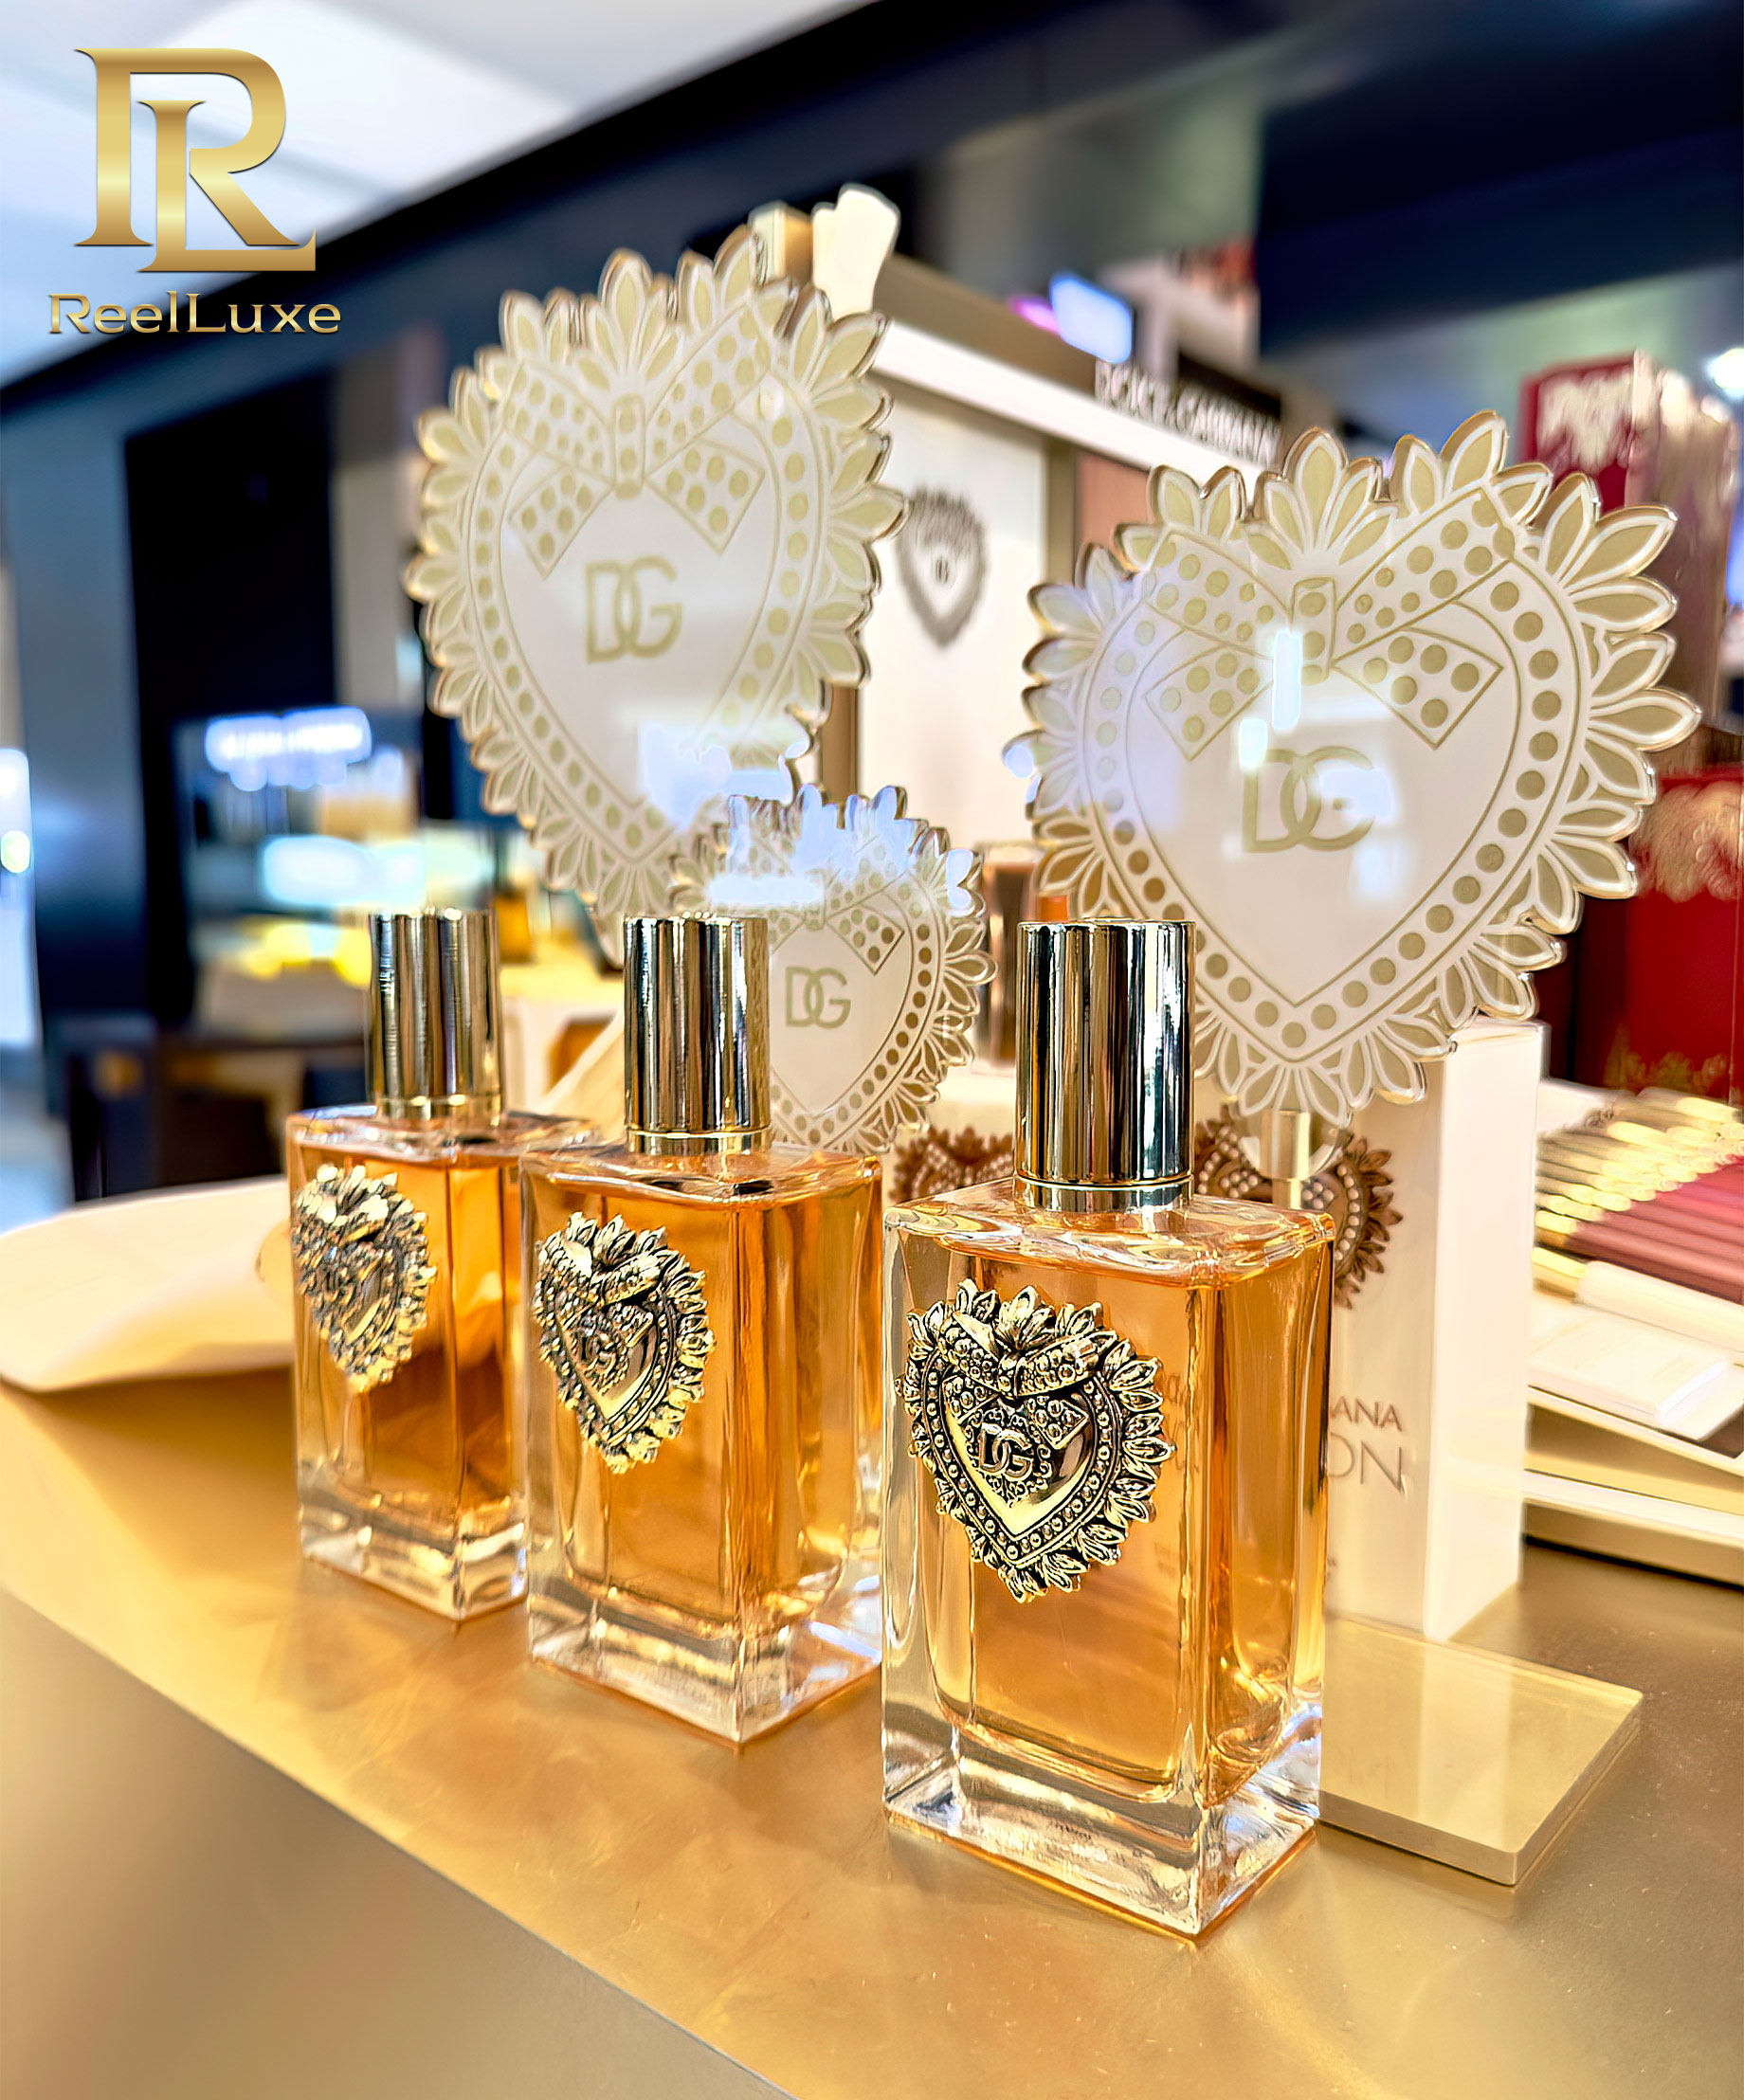 Dolce & Gabbana - D&G Devotion Devotion Eau de Parfum - Rinascente - Rome Via del Tritone - Rome, Italie